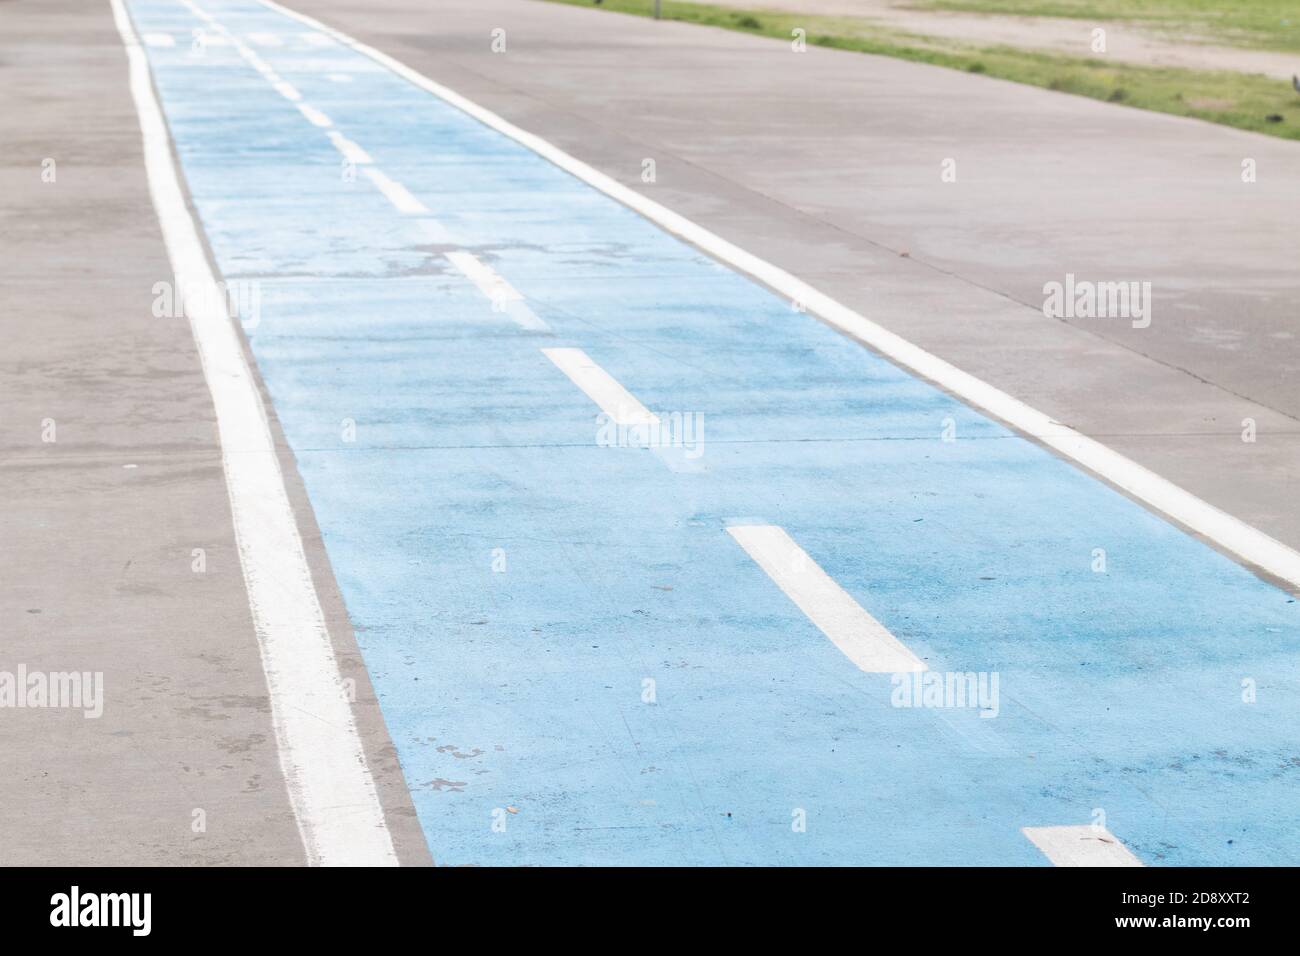 Spezielle Fahrradstraße für den Bürgersteig. Blauer Radweg Stockfoto